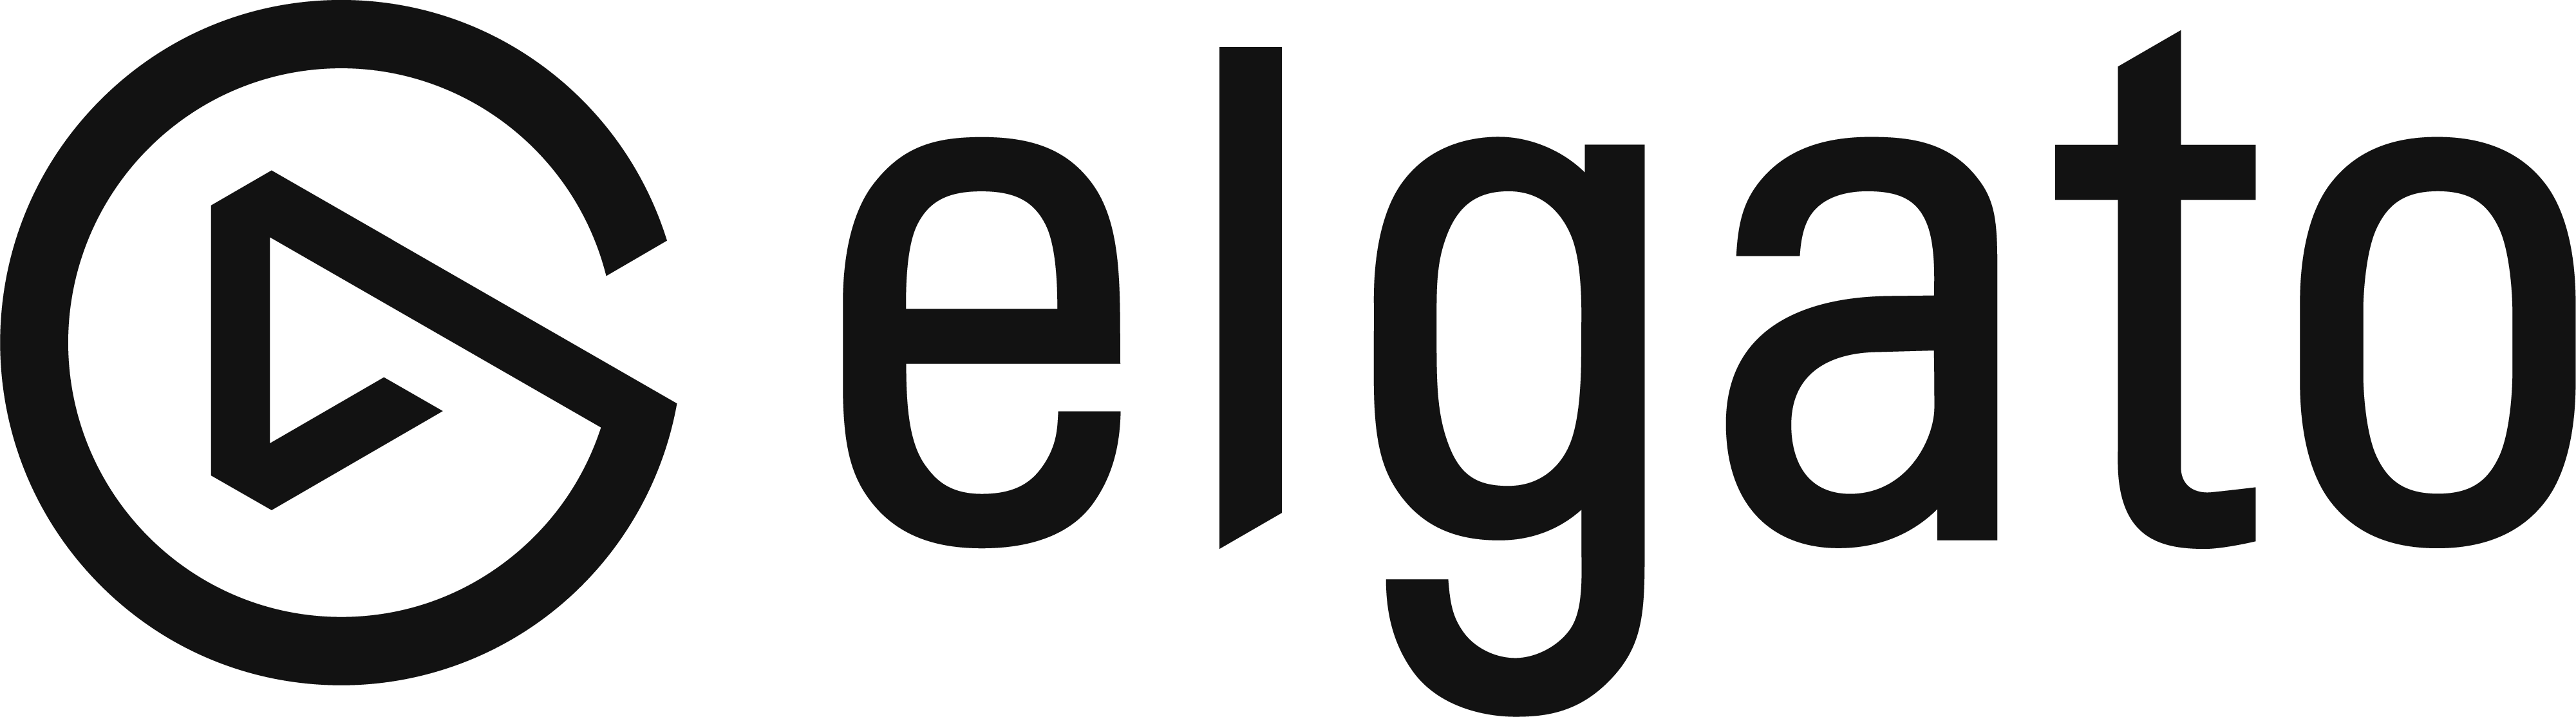 Elgato_Logo_Black